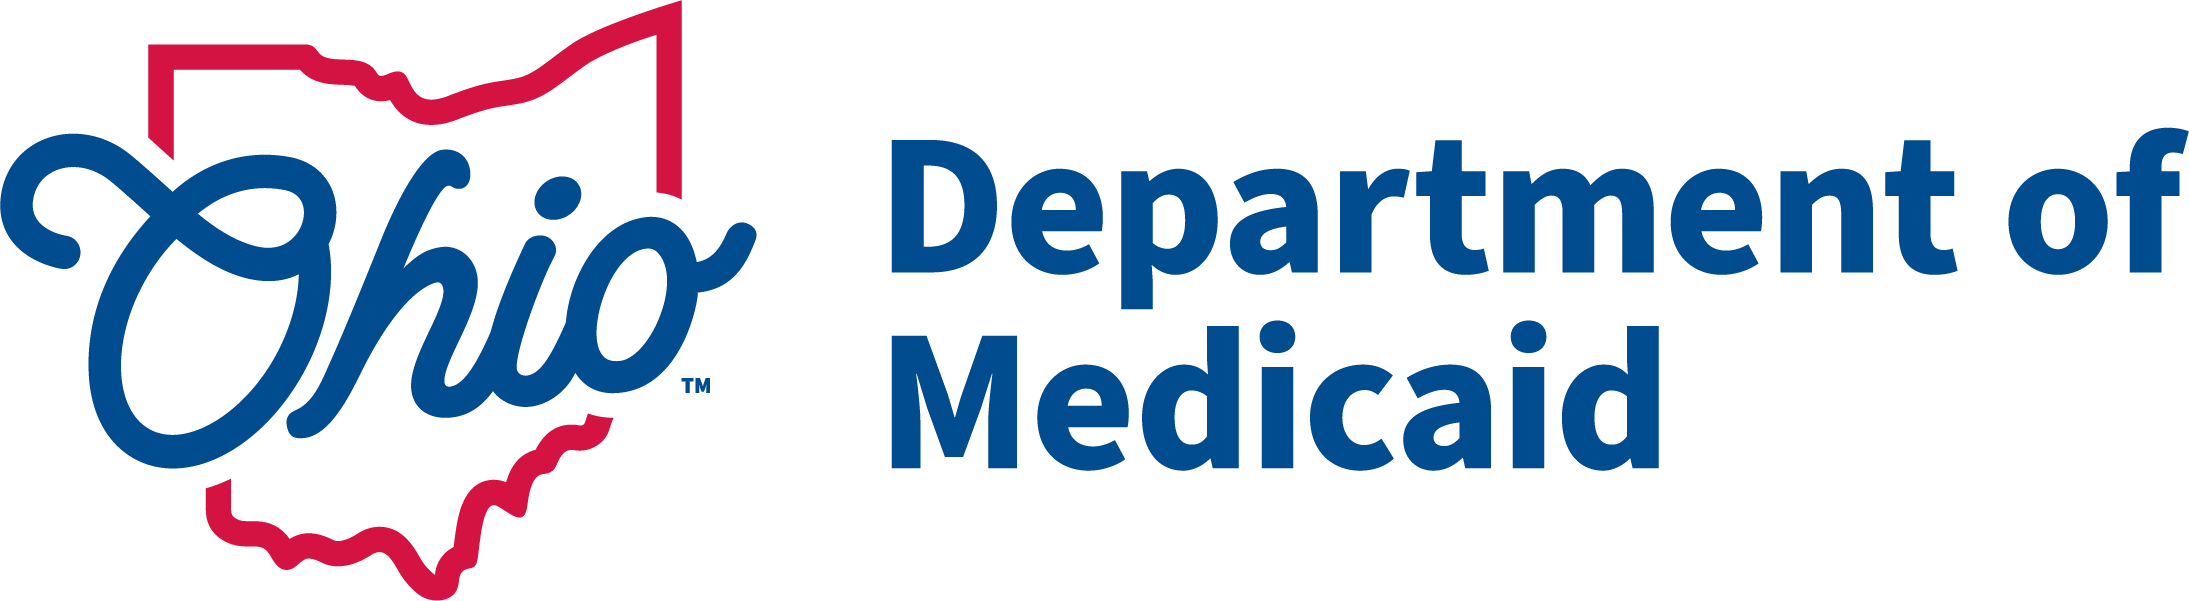 Ohio Department of Medicaid Logo